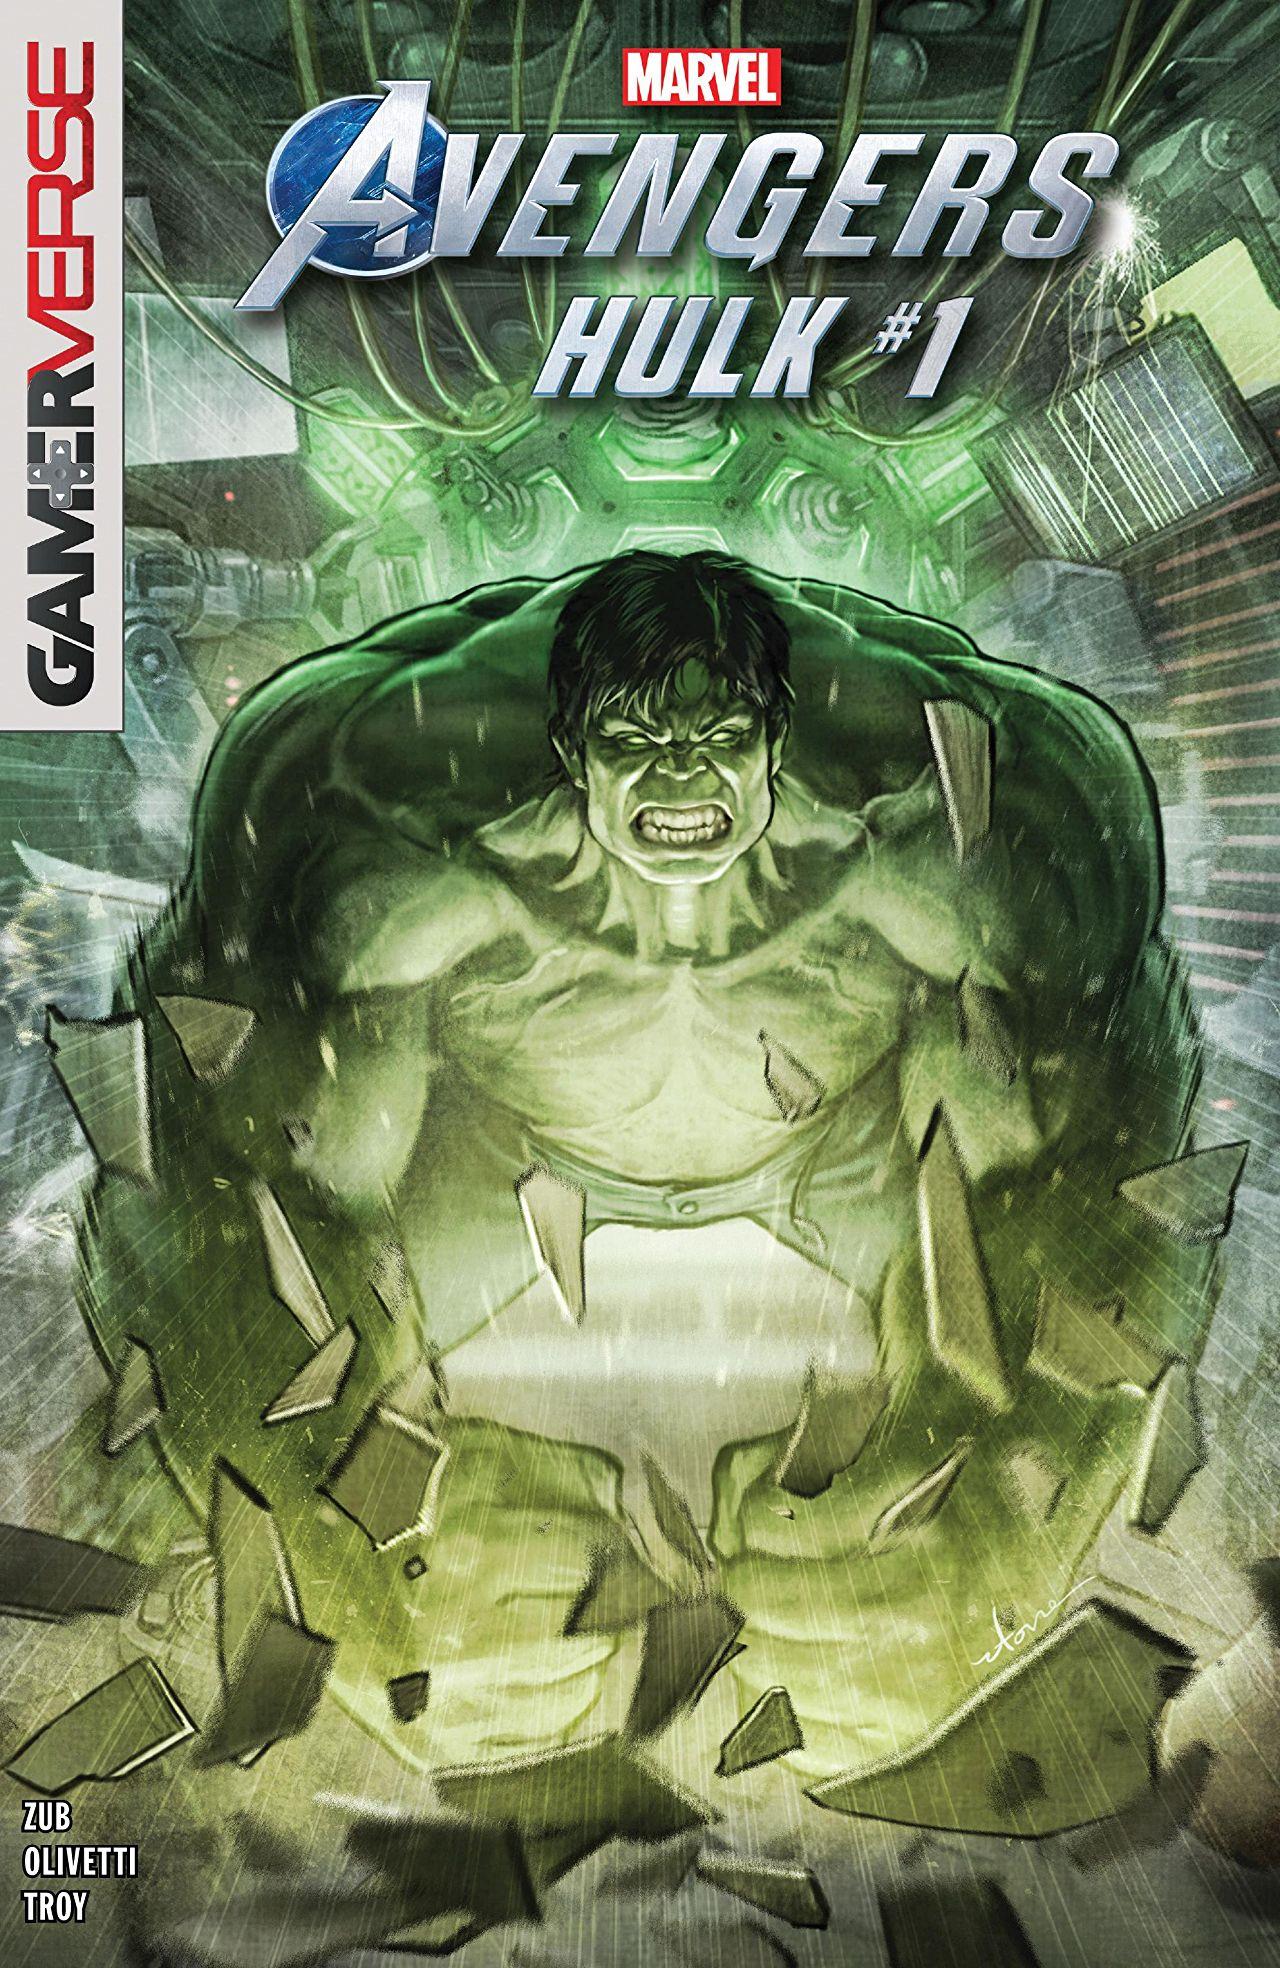 Marvel's Avengers: Hulk Vol. 1 #1